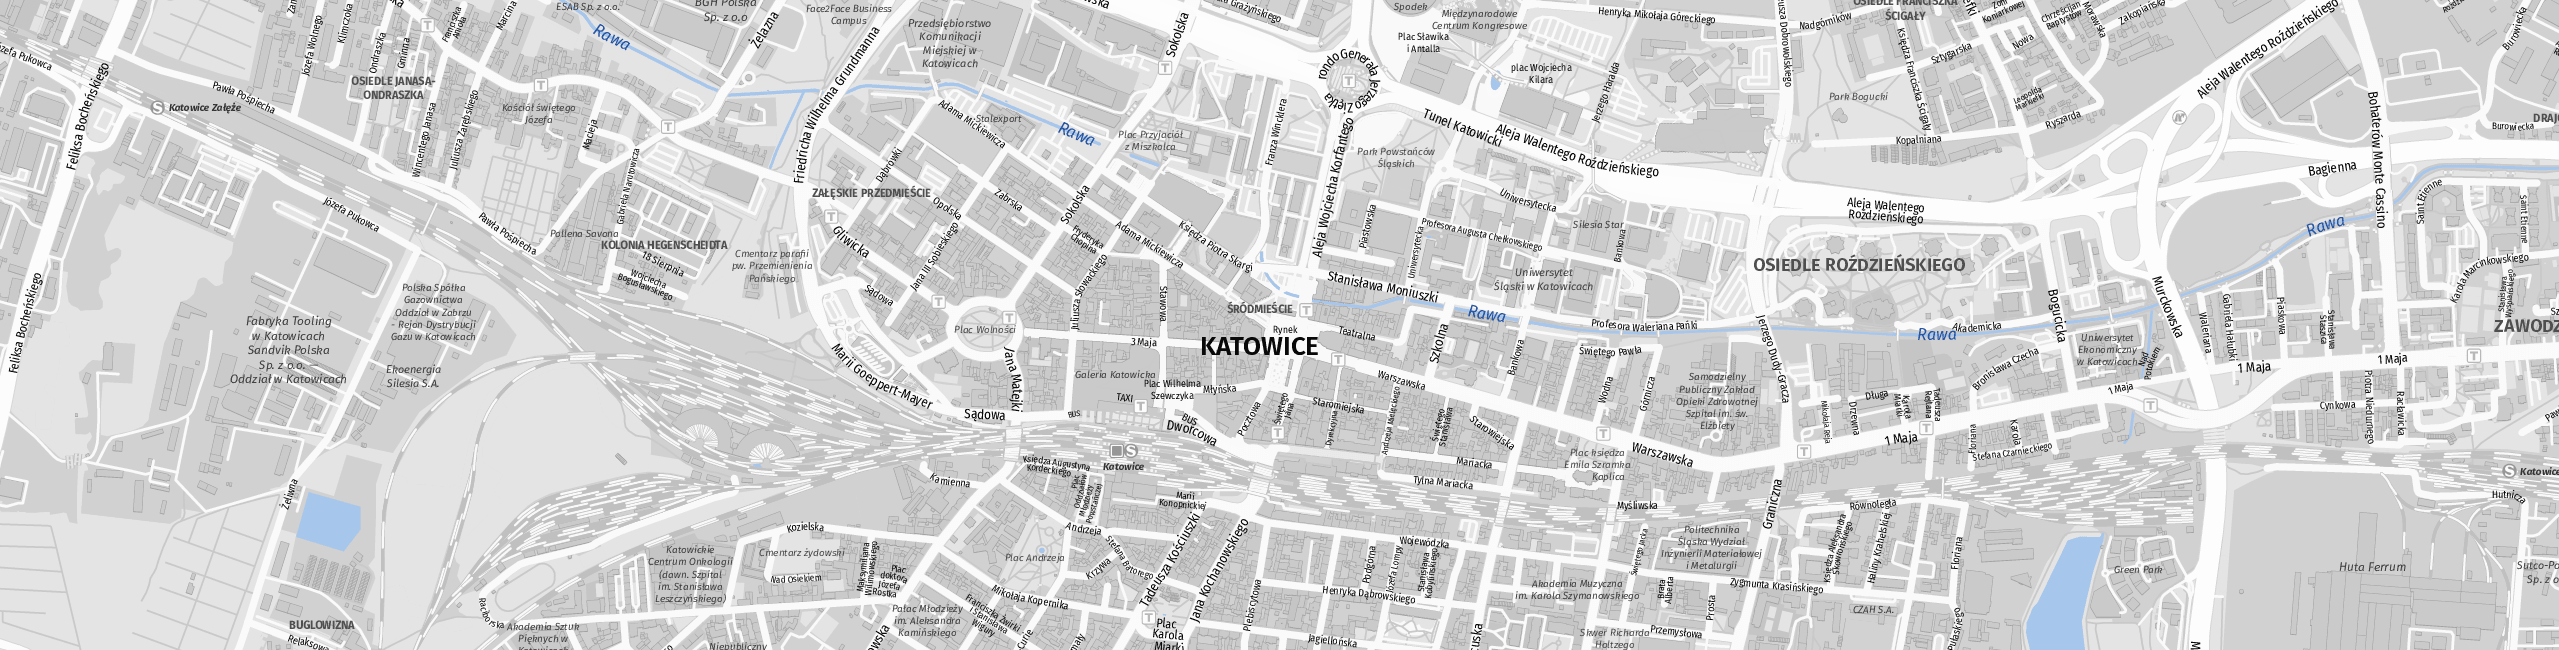 Stadtplan Katowice zum Downloaden.